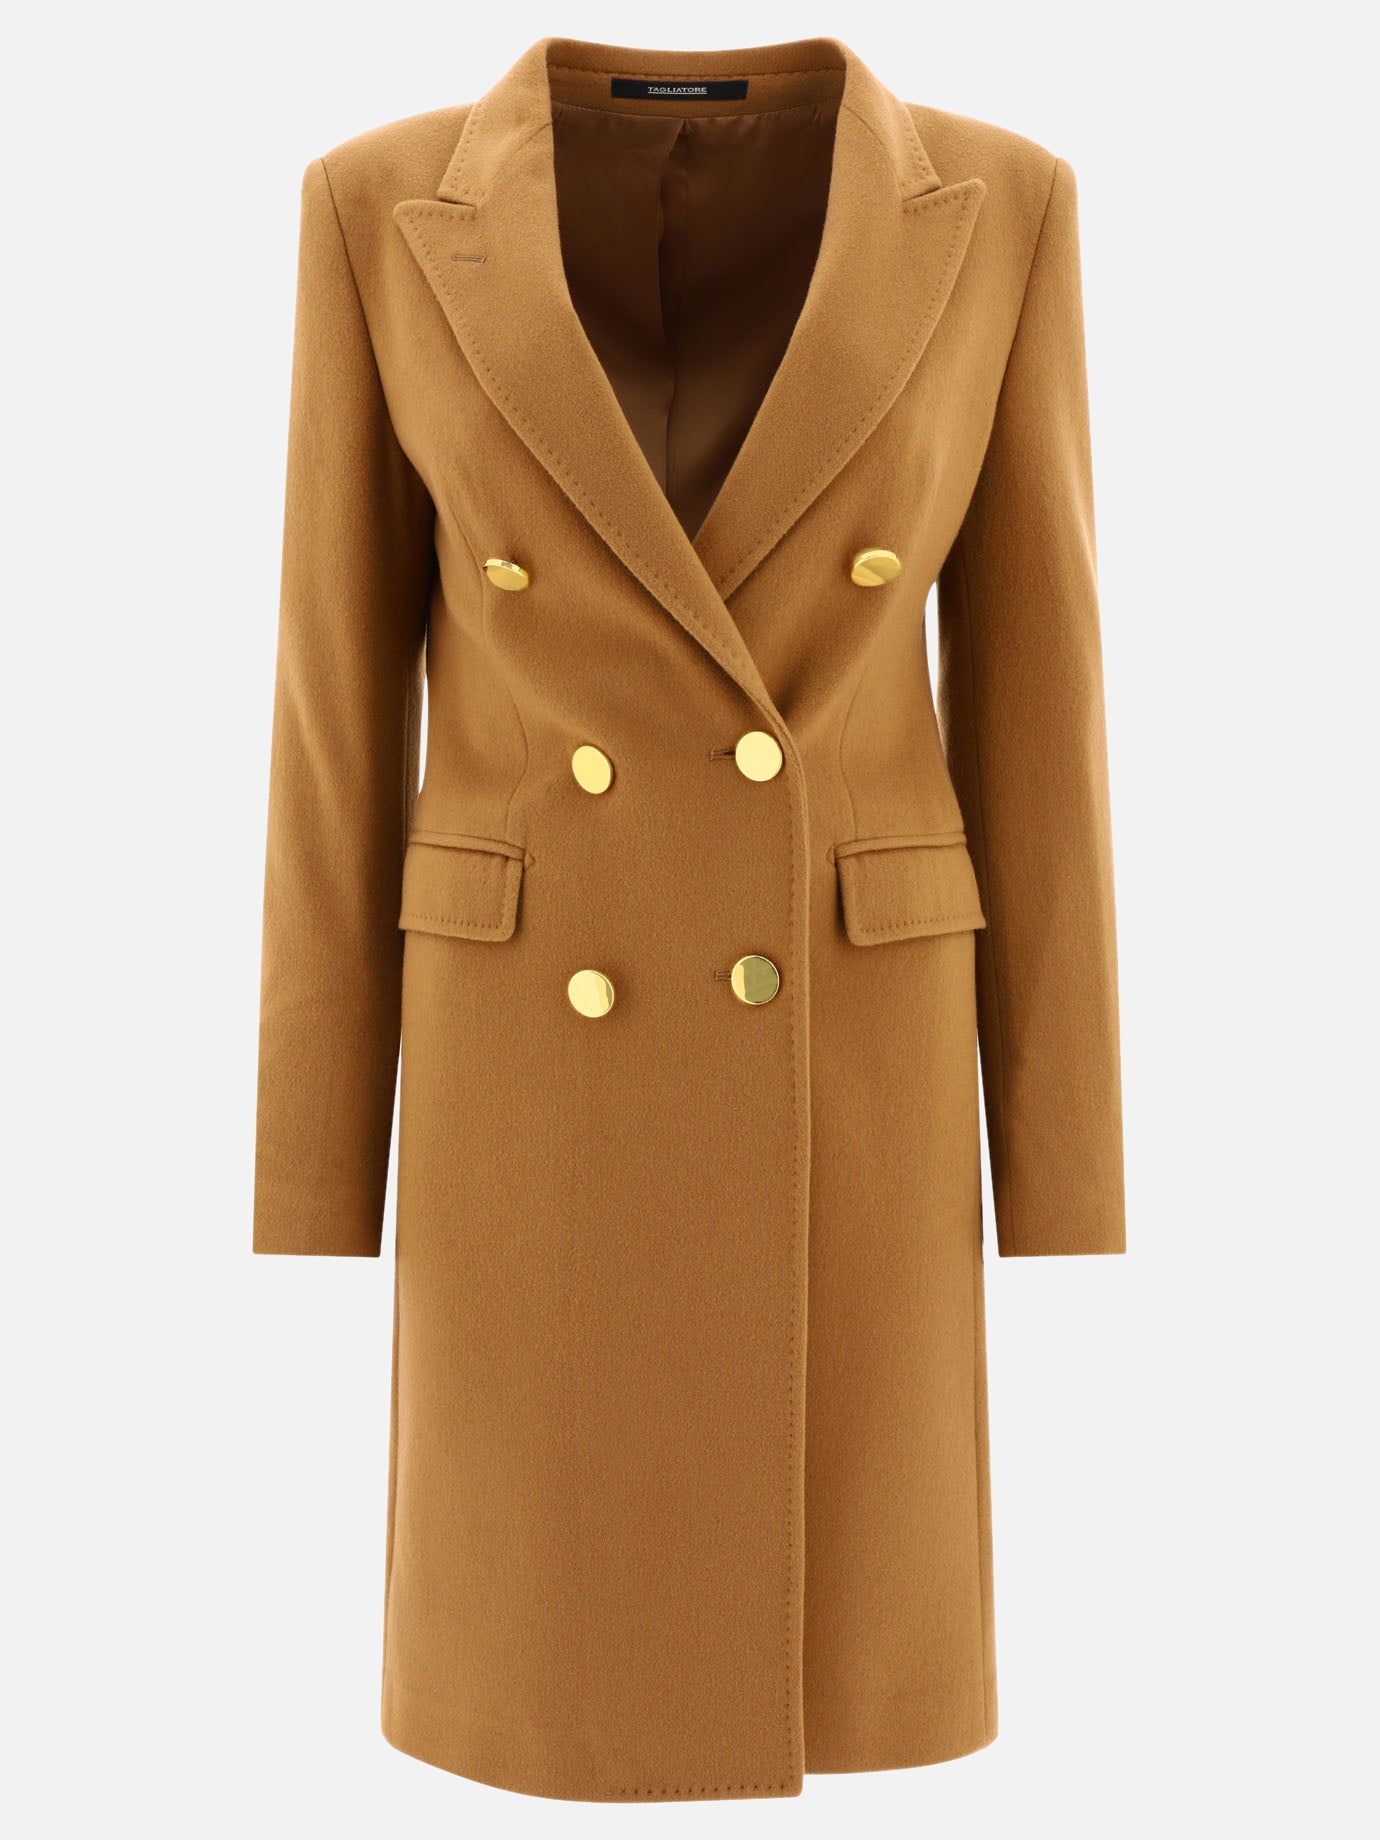 "Parigi" coat